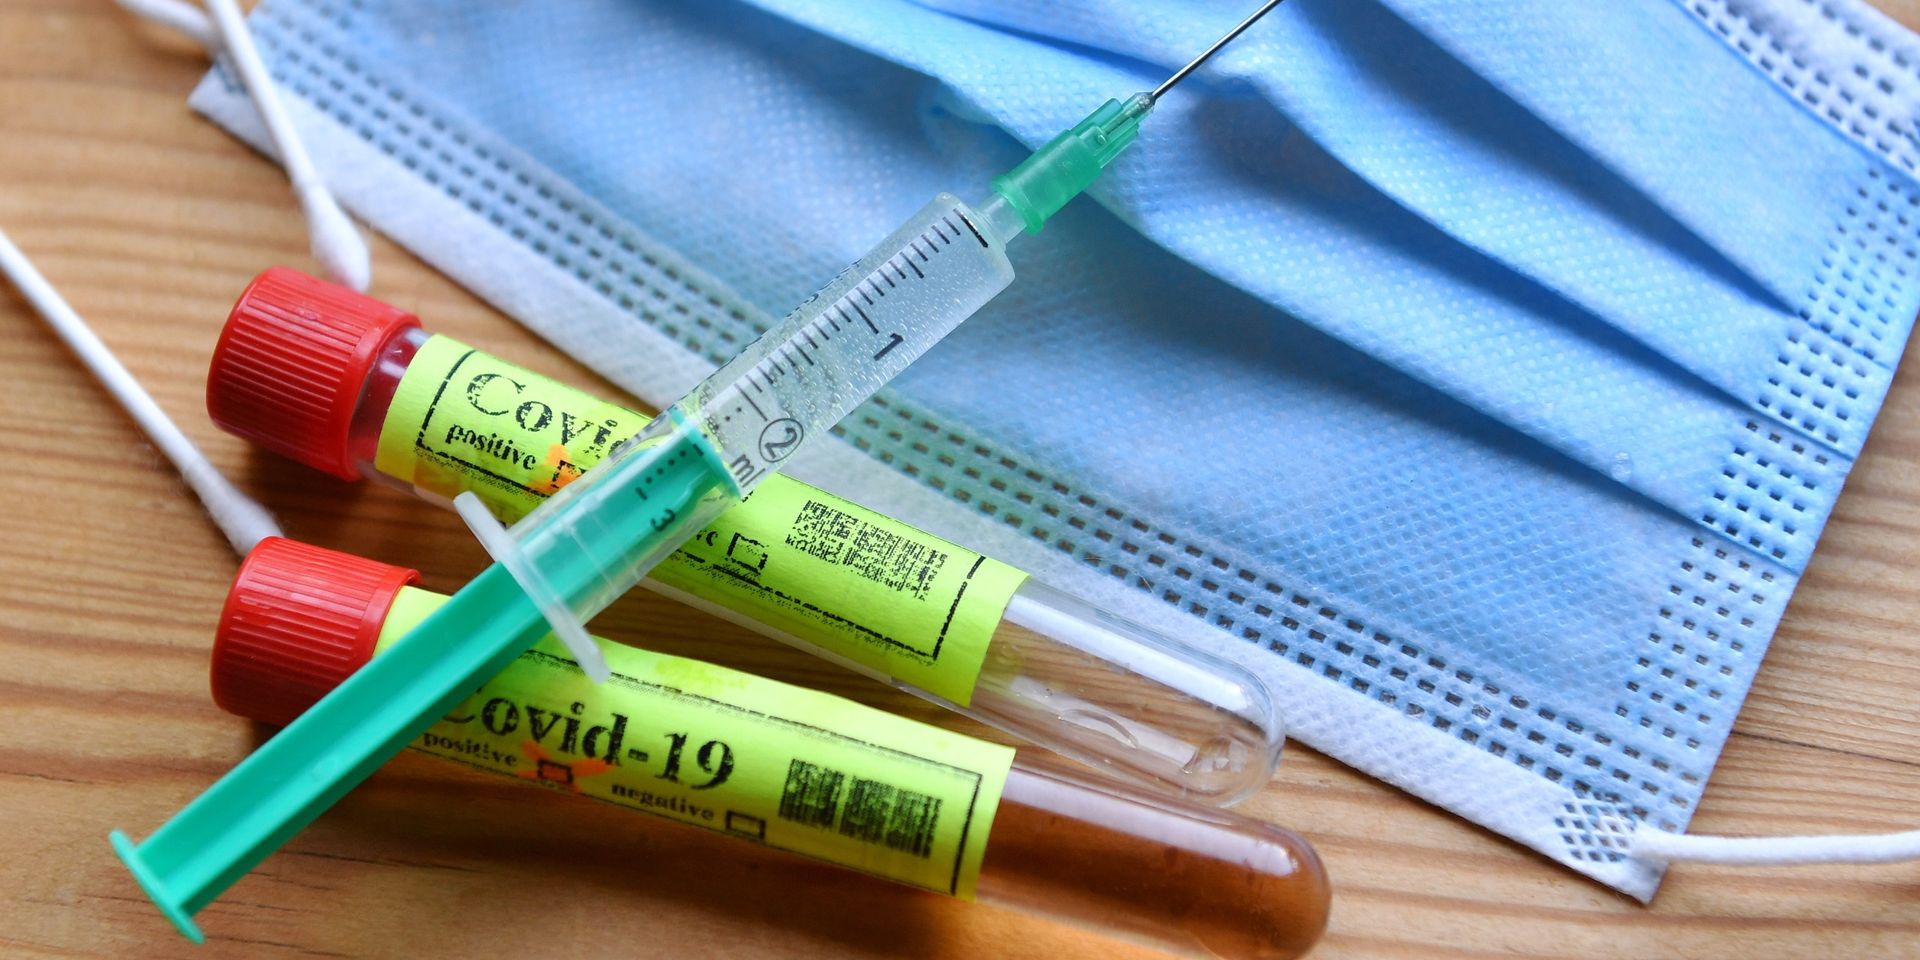 Covid-19: Le vaccin d'Oxford est "sûr" et produit des premiers résultats positifs